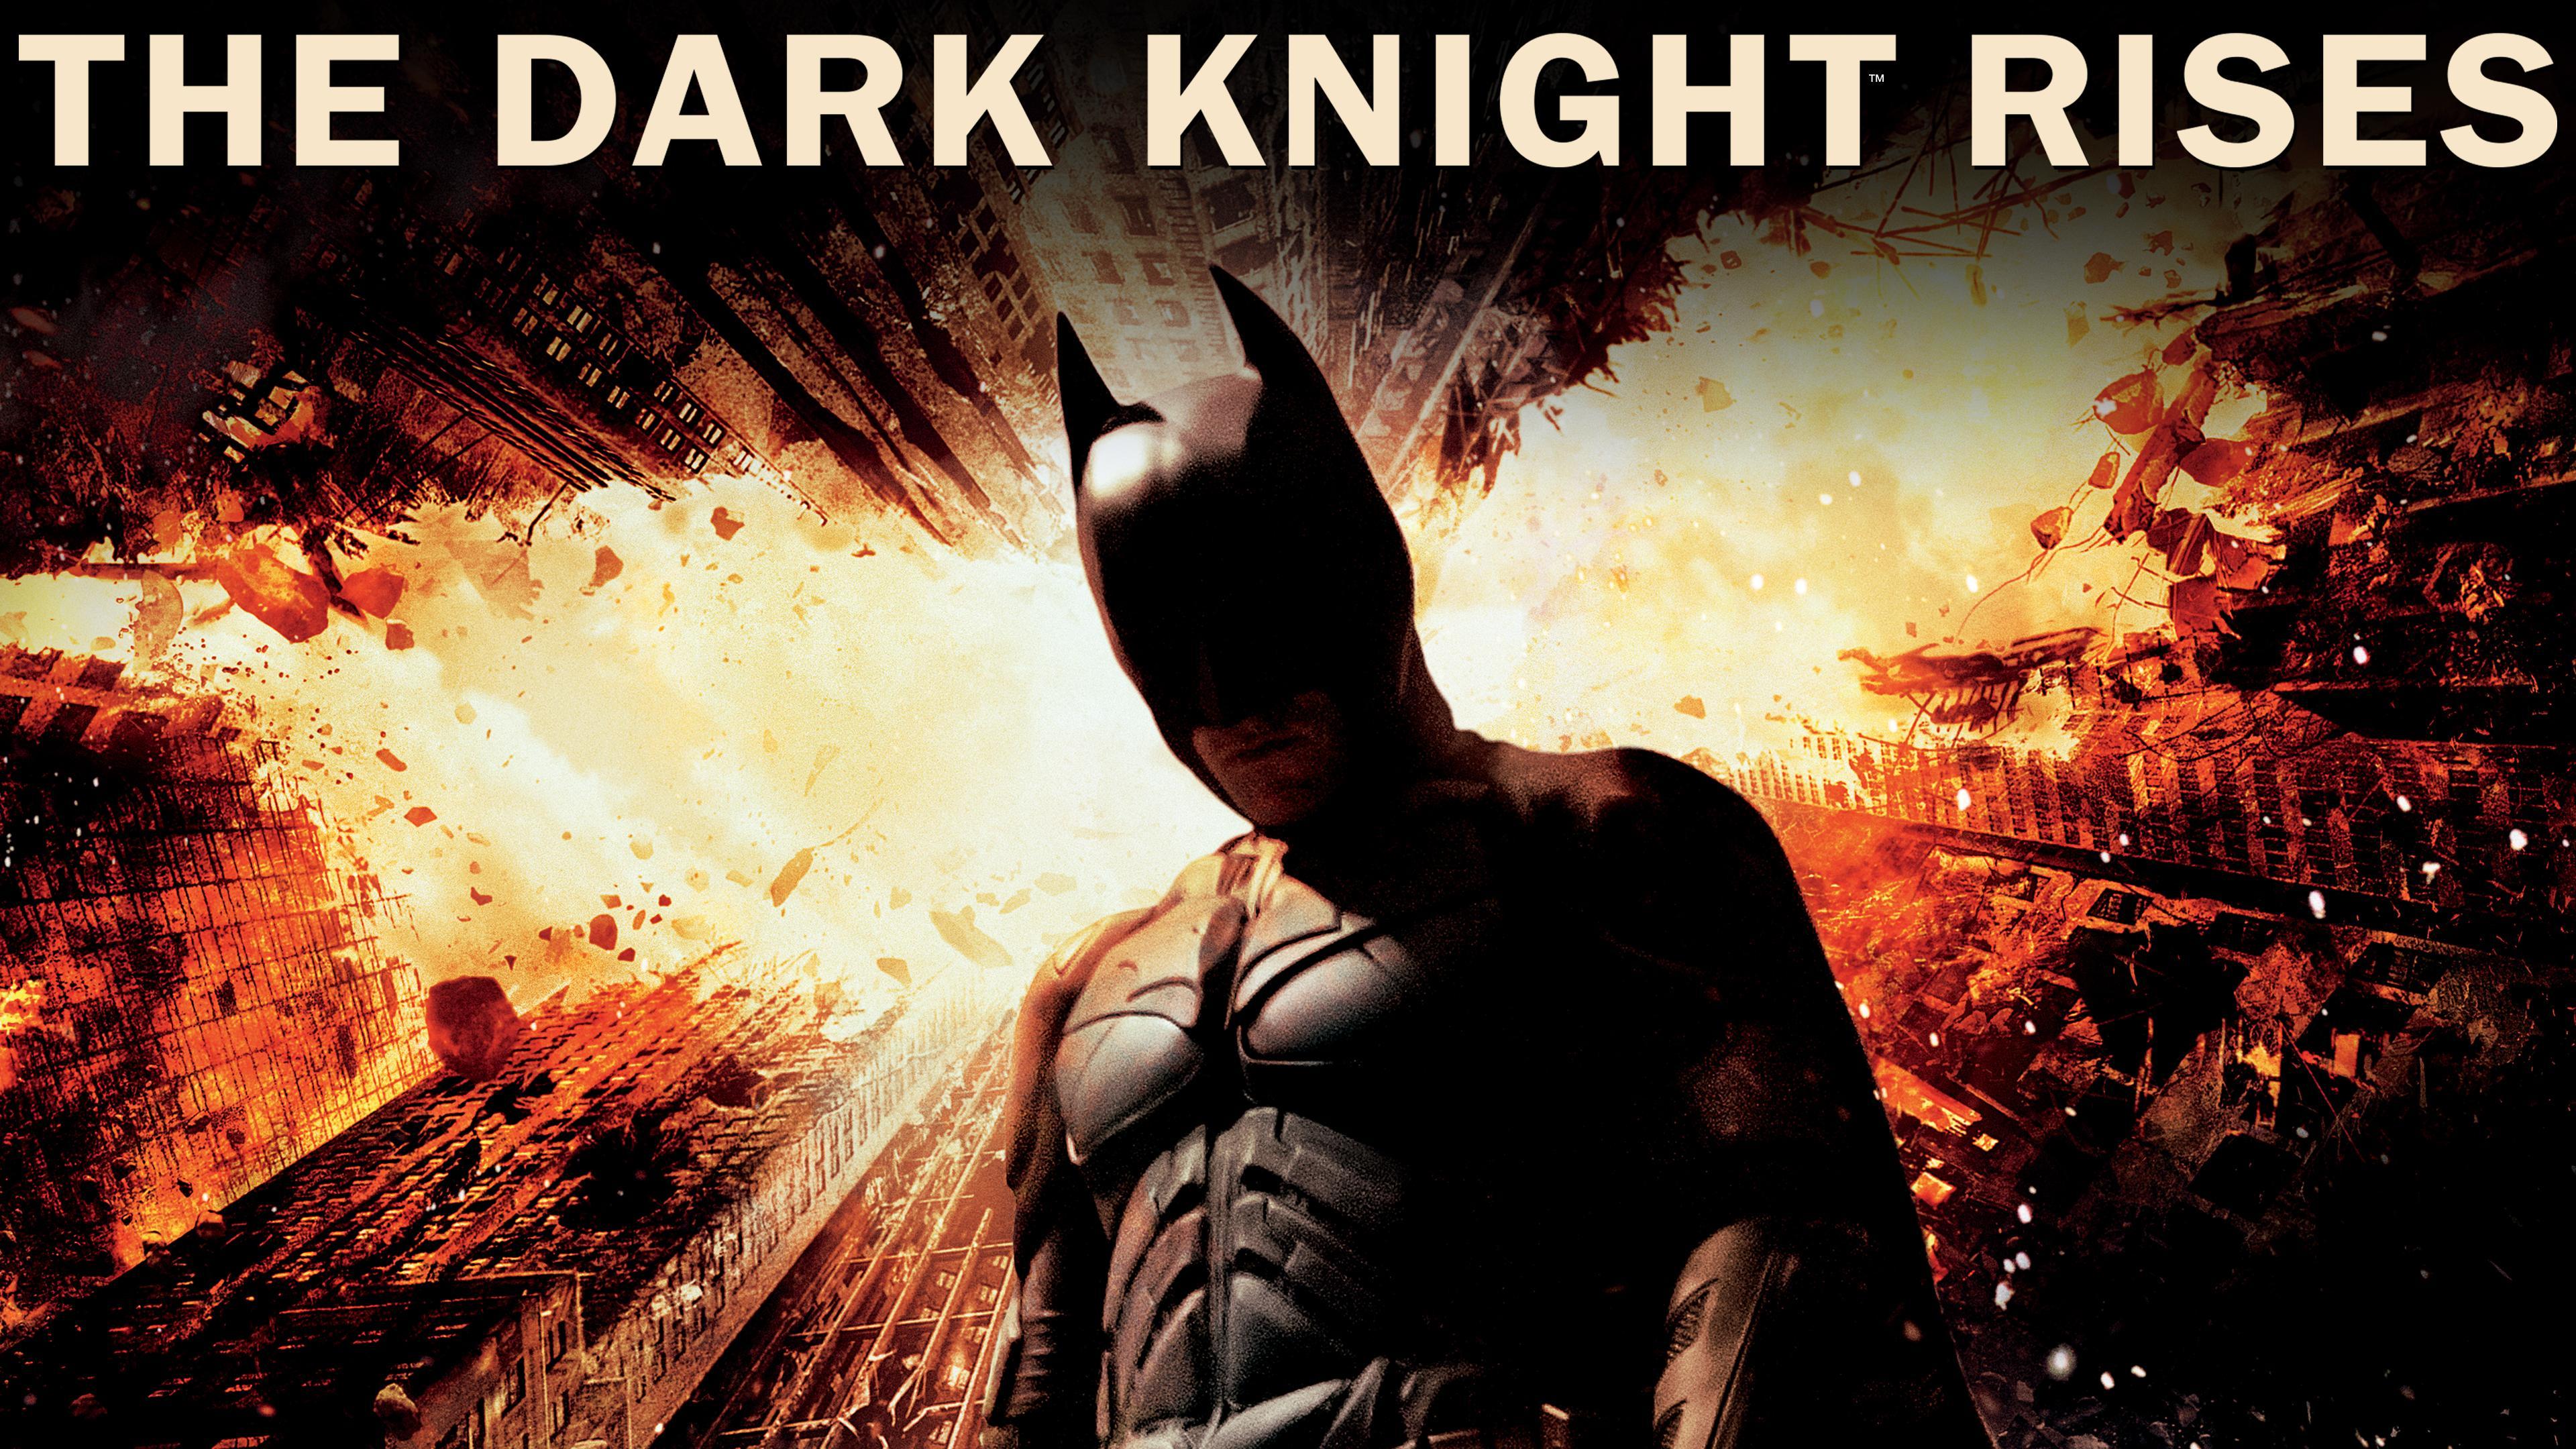 Watch The Dark Knight Streaming Online